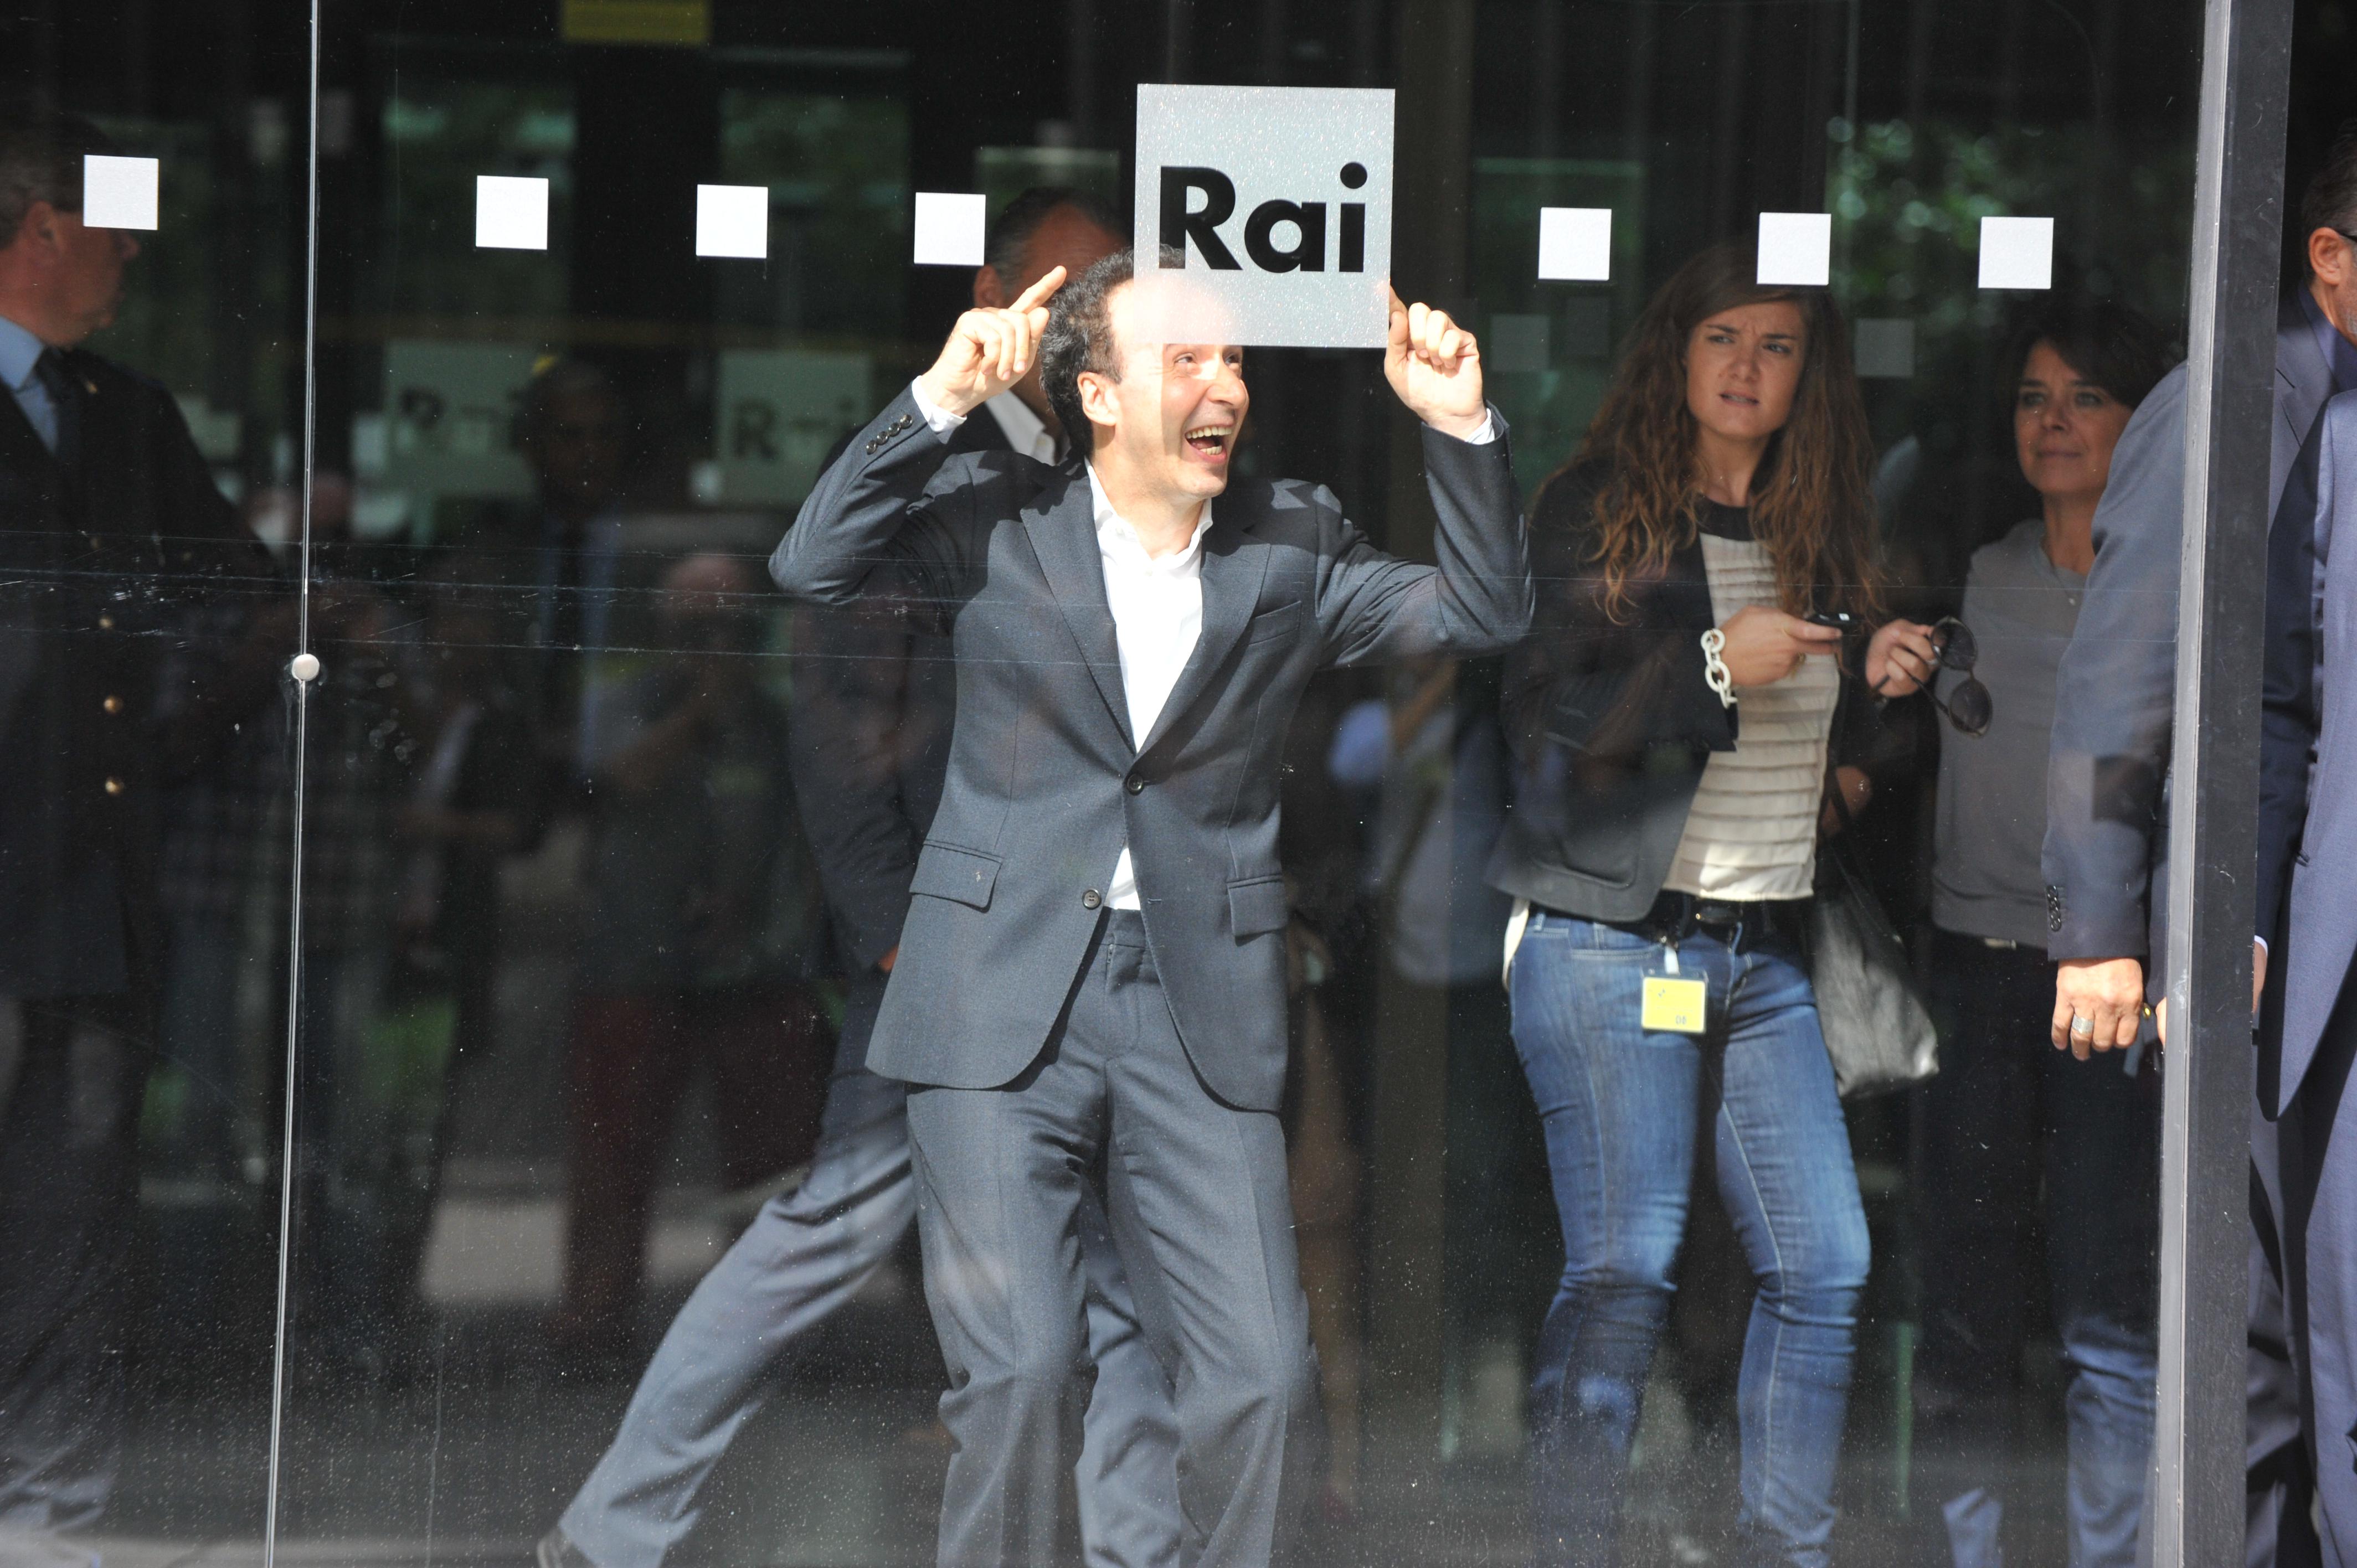 Roma, 13 ottobre 2014. Rai, presentazione de' 'I dieci comandamenti'. Con Roberto Benigni (Foto Adnkronos/Cristiano Camera)